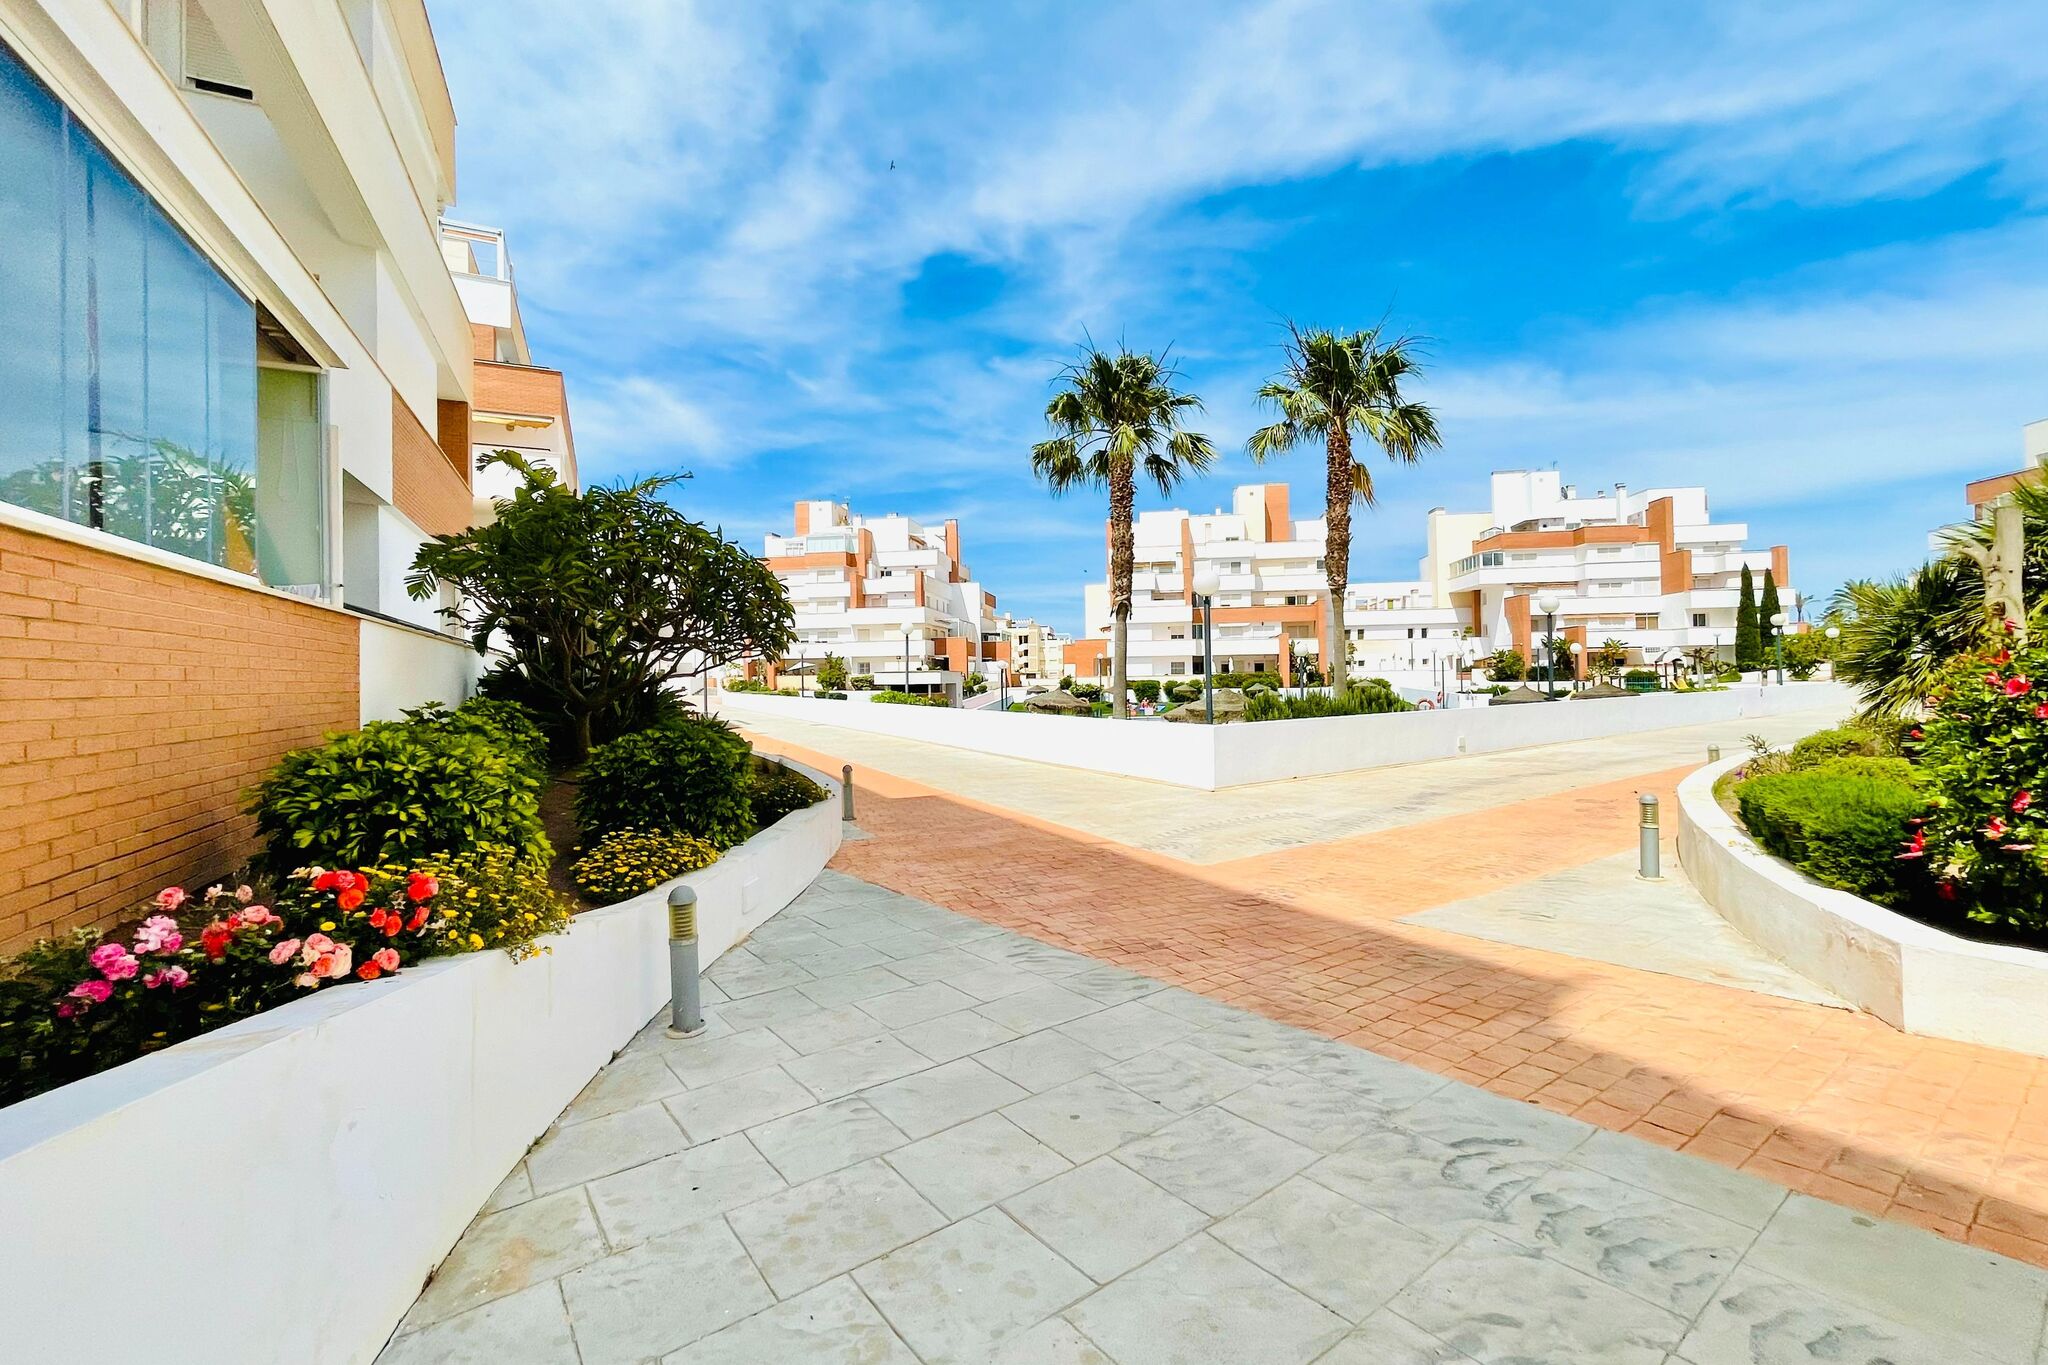 Attractive apartment in Roquetas de Mar with terrace